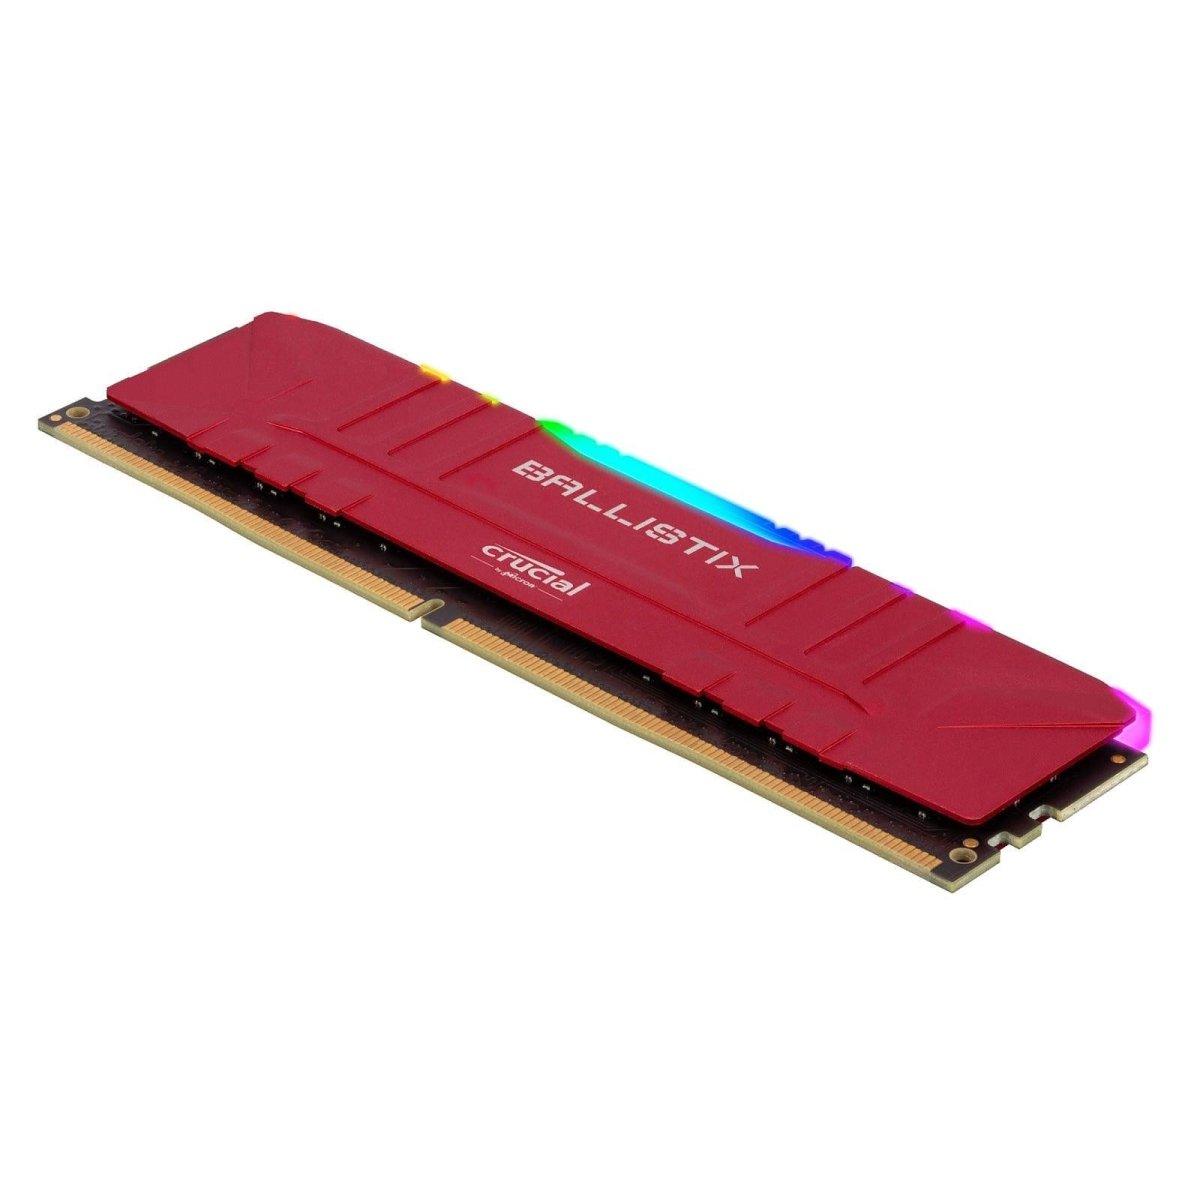 Crucial Ballistix RGB red maroc 8 Go rouge DDR4 3200 MHz CL16  Prix Barrette Memoire pas cher - smartmarket.ma